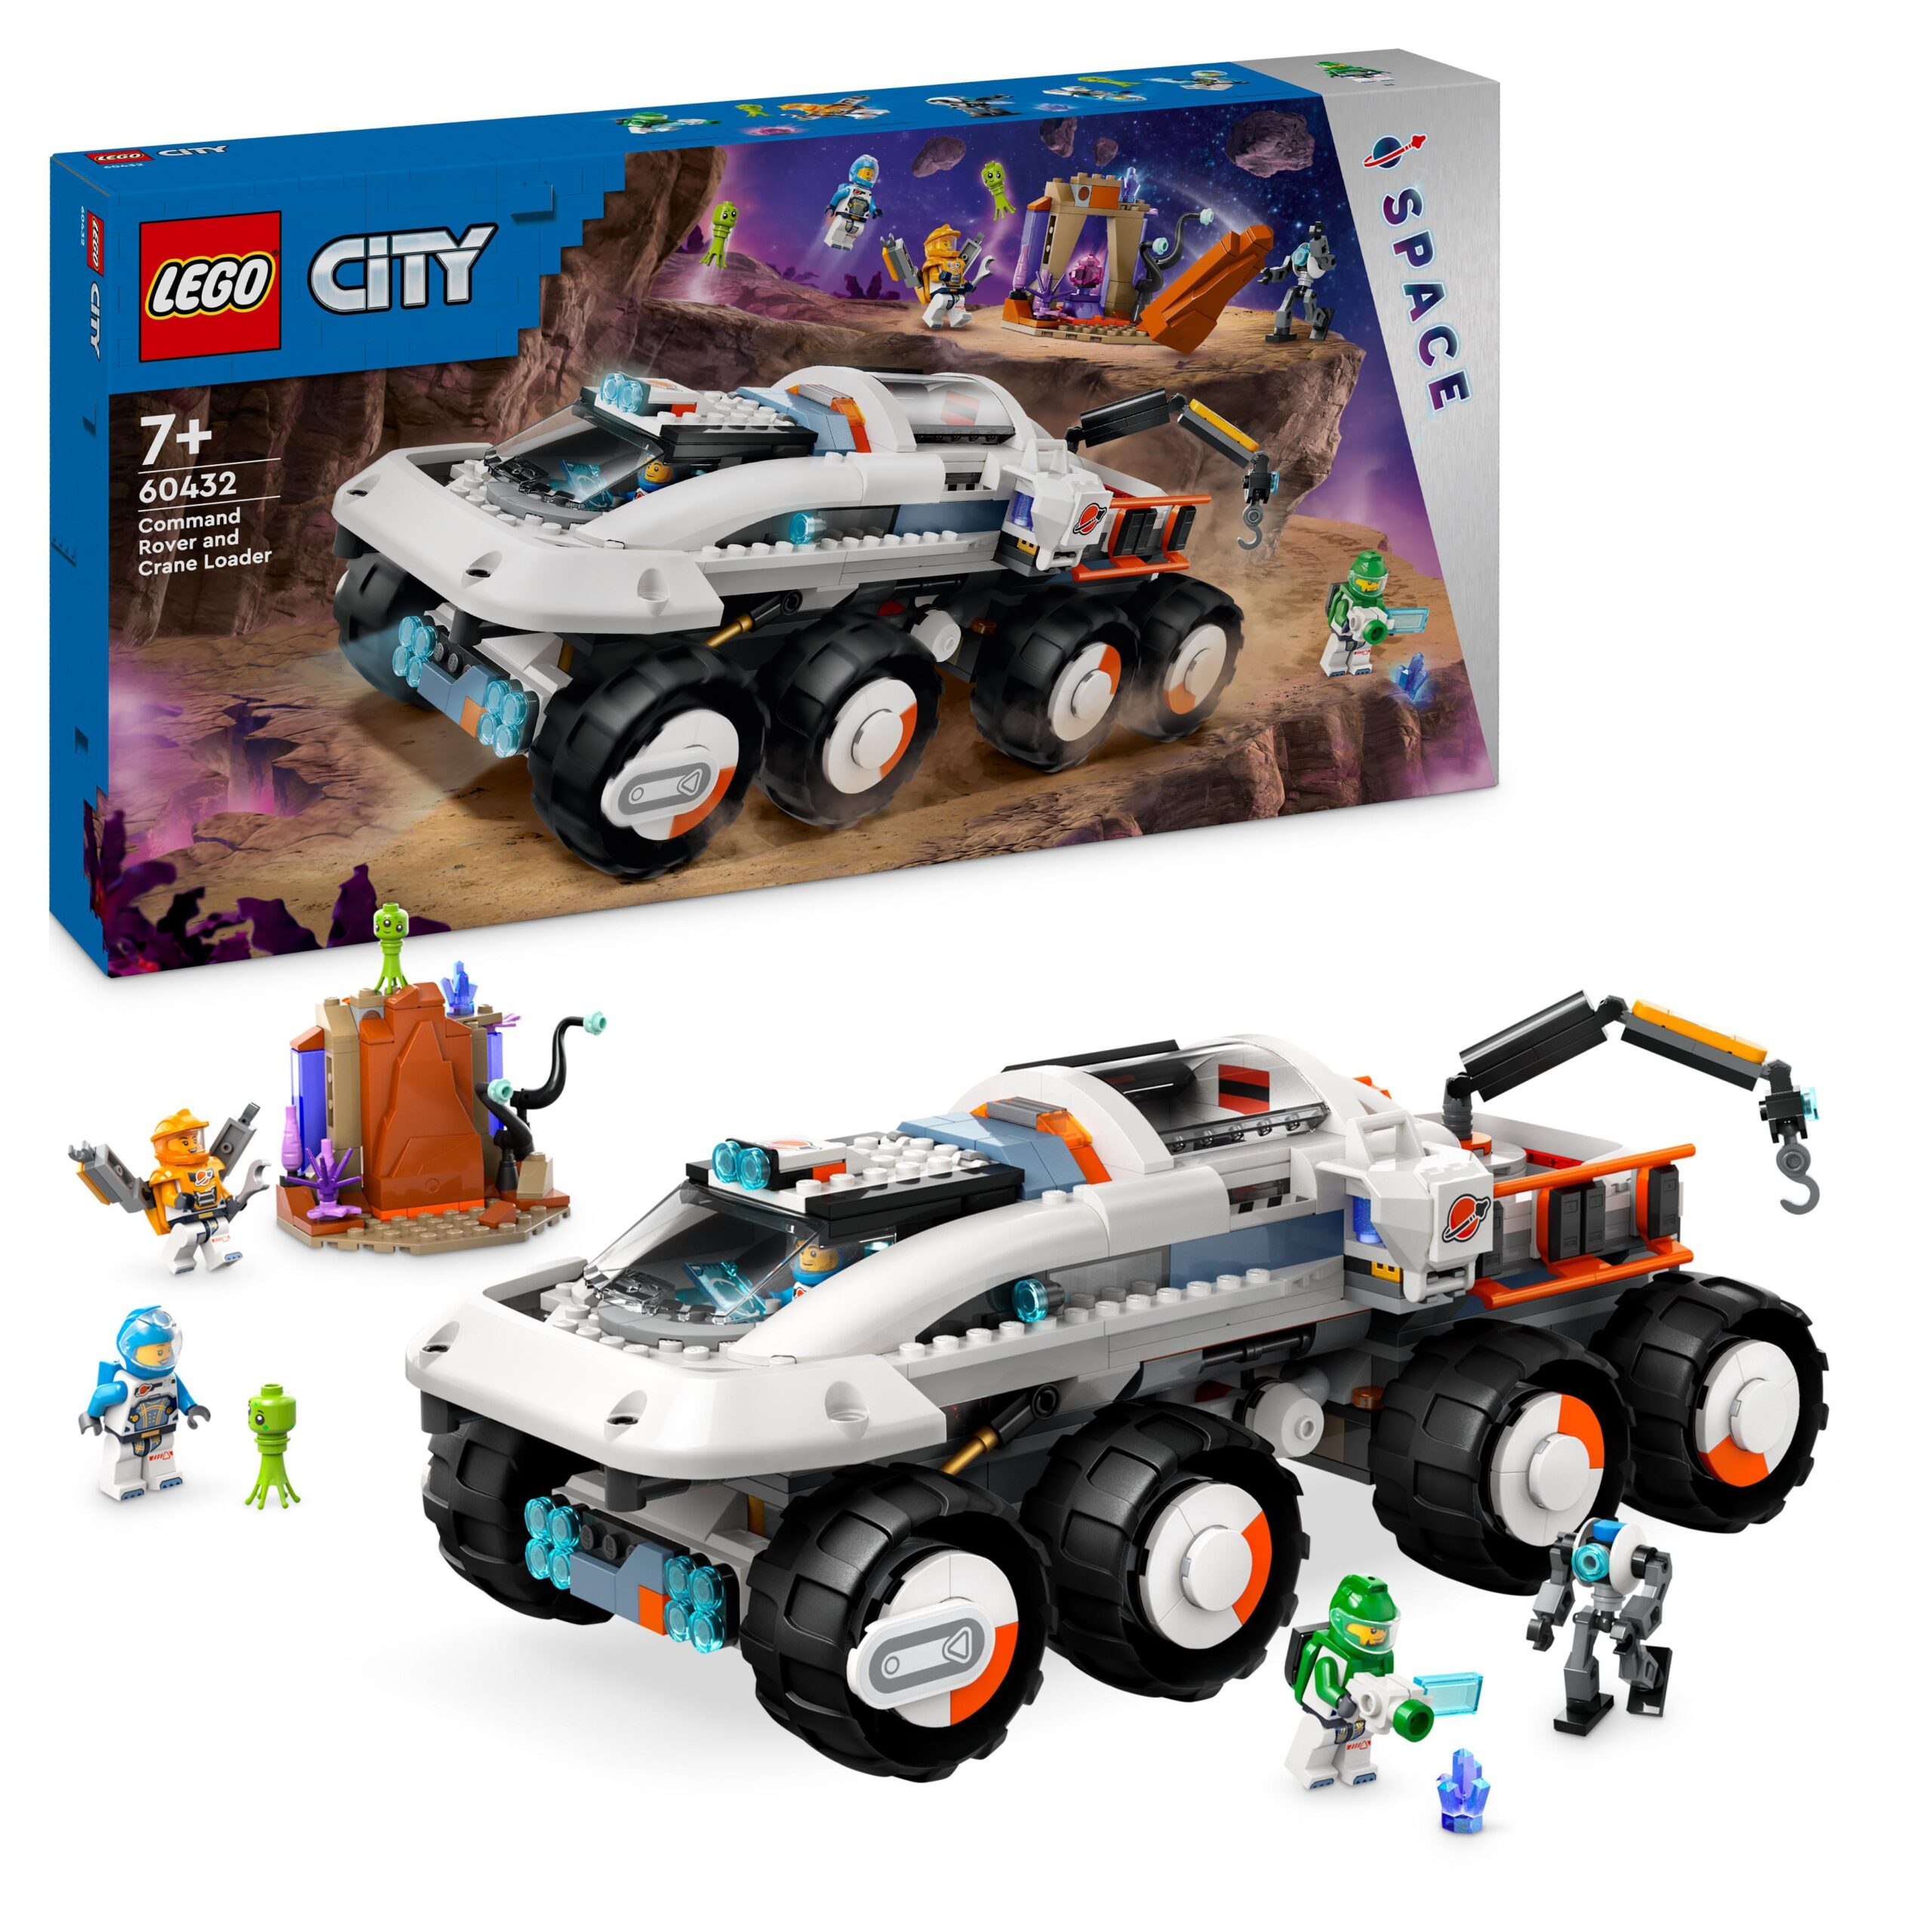 Lego city 60432 rover di comando e gru di carico, gioco spaziale per bambini 7+ con camion giocattolo, 4 minifigure e robot